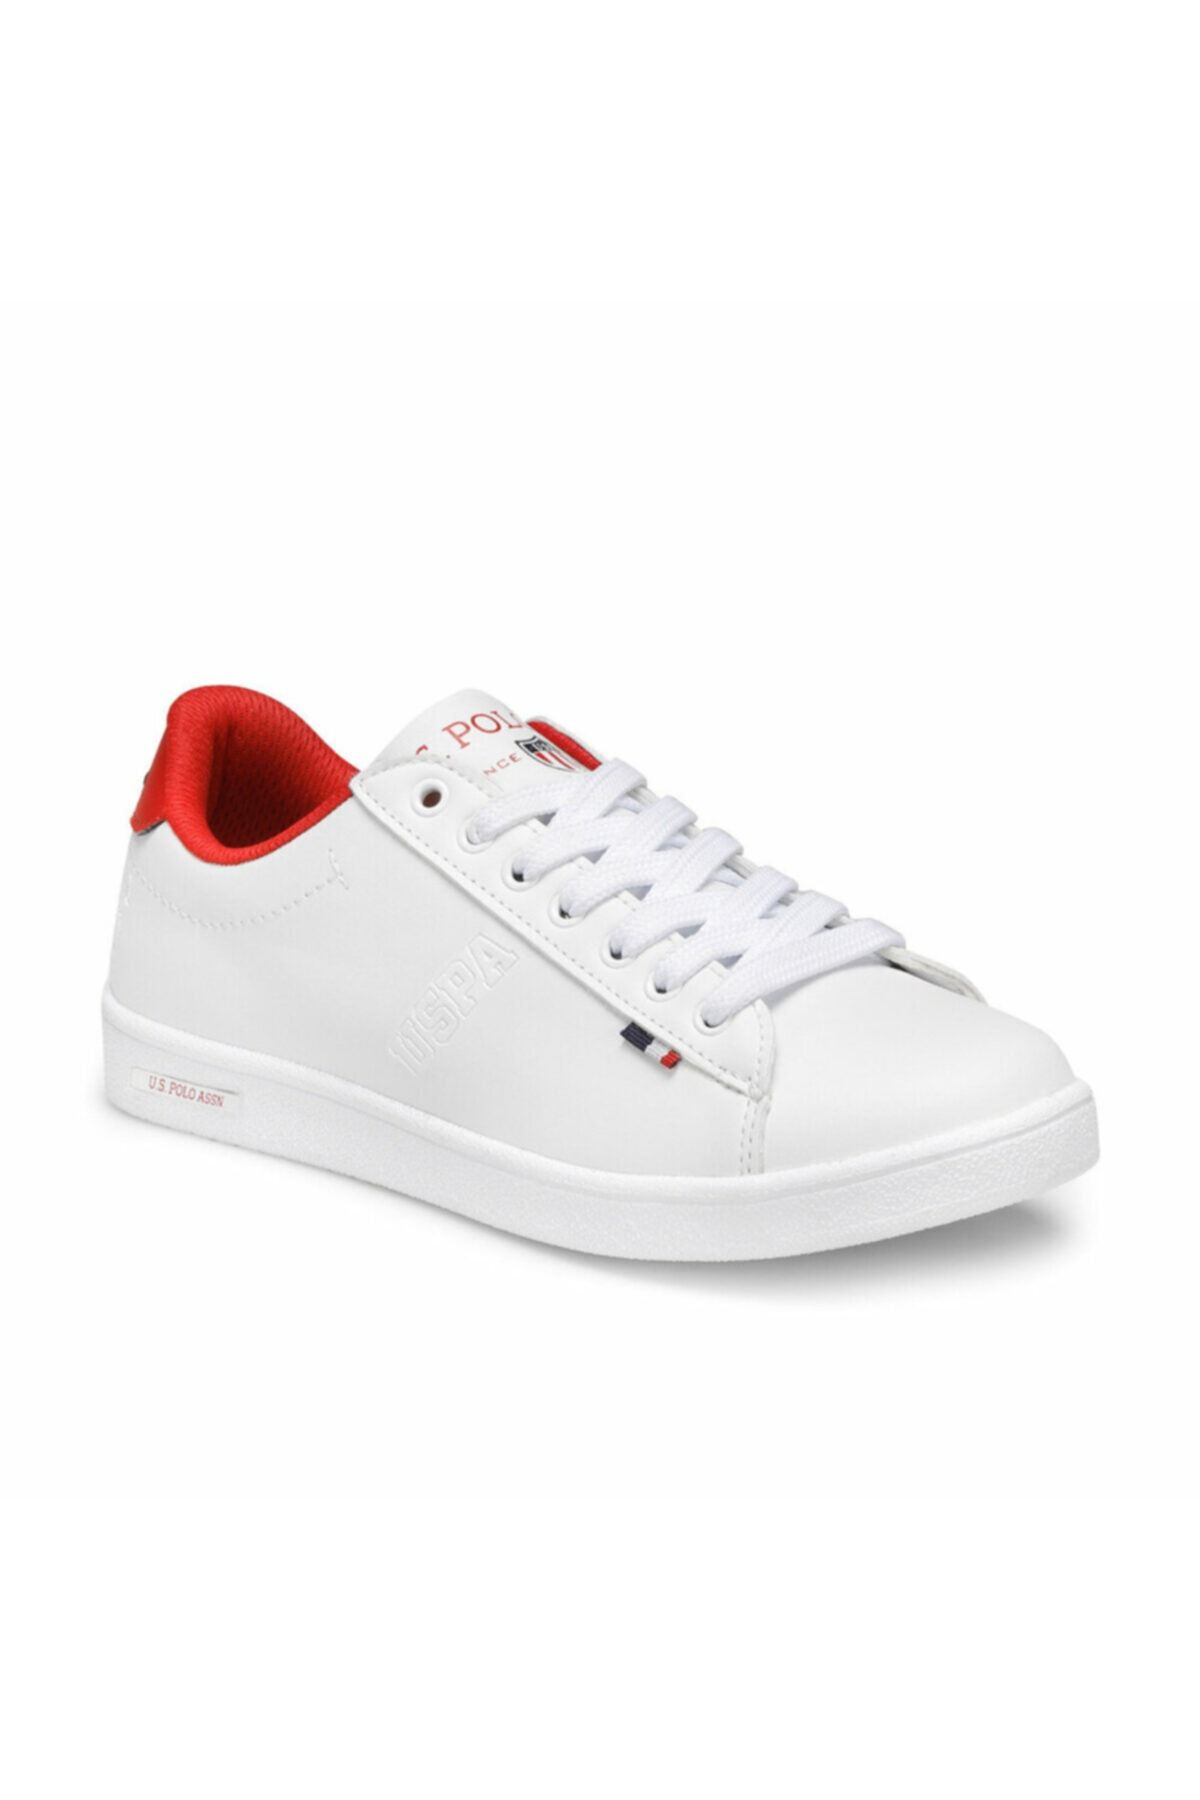 U.S. Polo Assn. FRANCO Beyaz Kadın Sneaker Ayakkabı 100327264